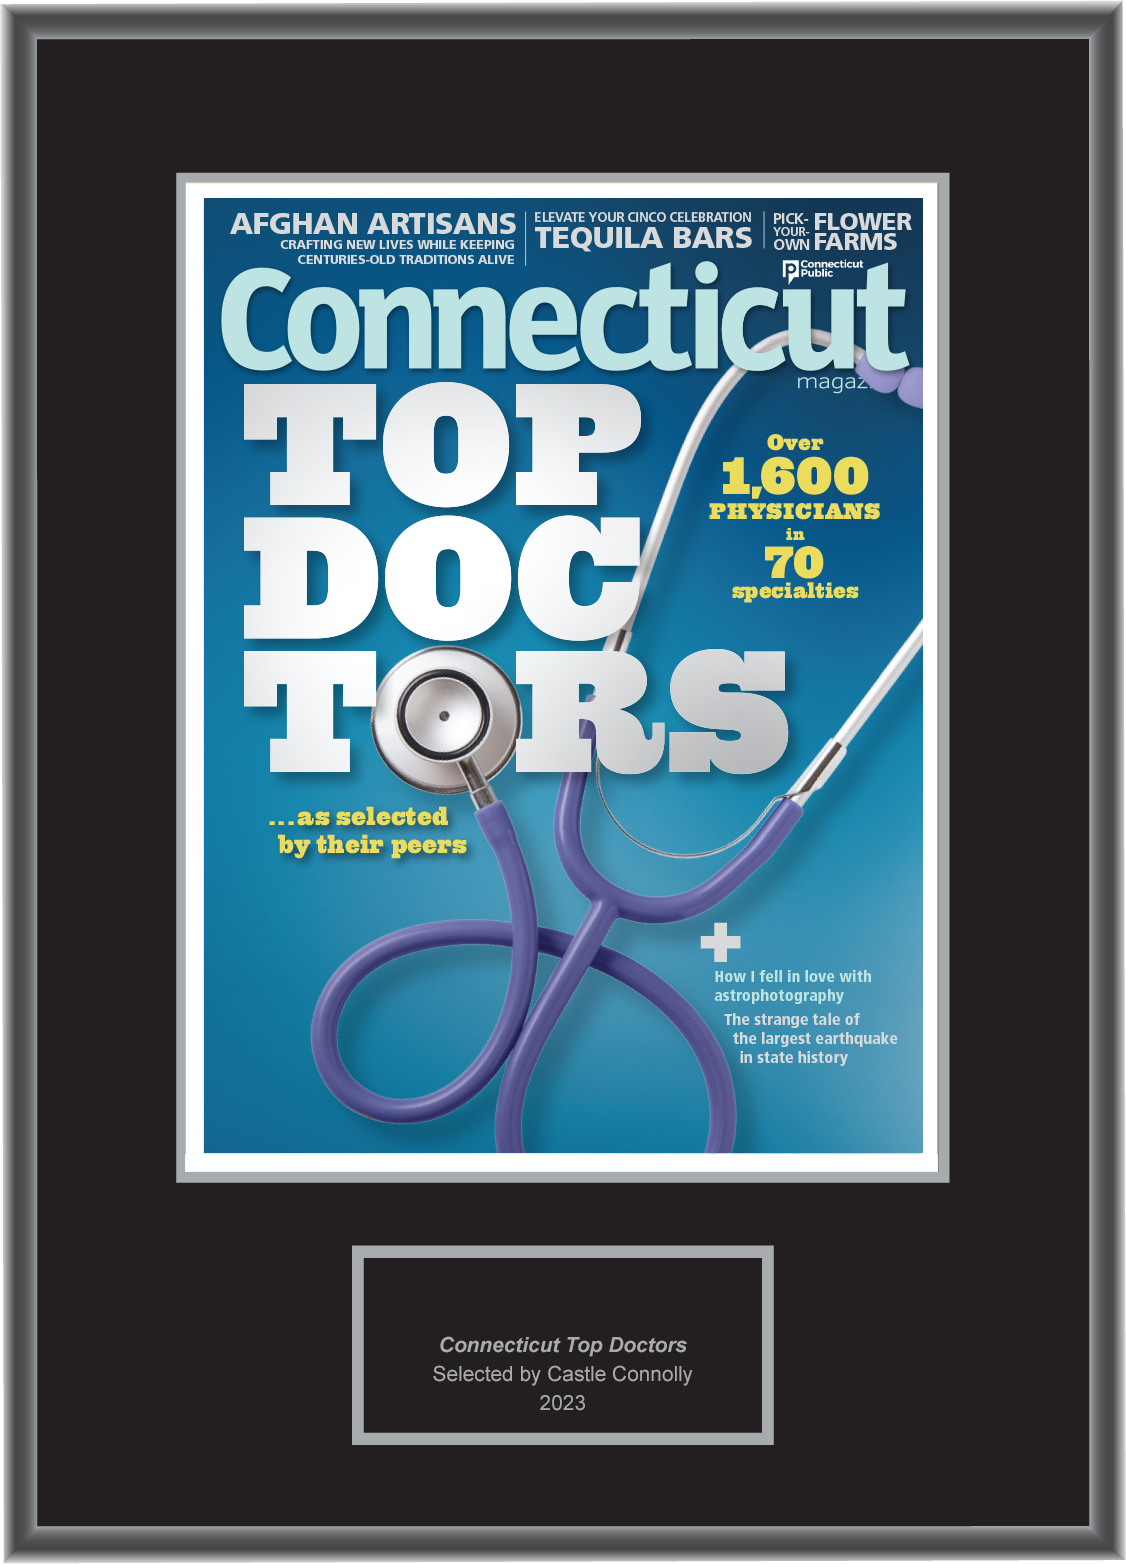 Connecticut Magazine Top Doctors 2023 - Plaque